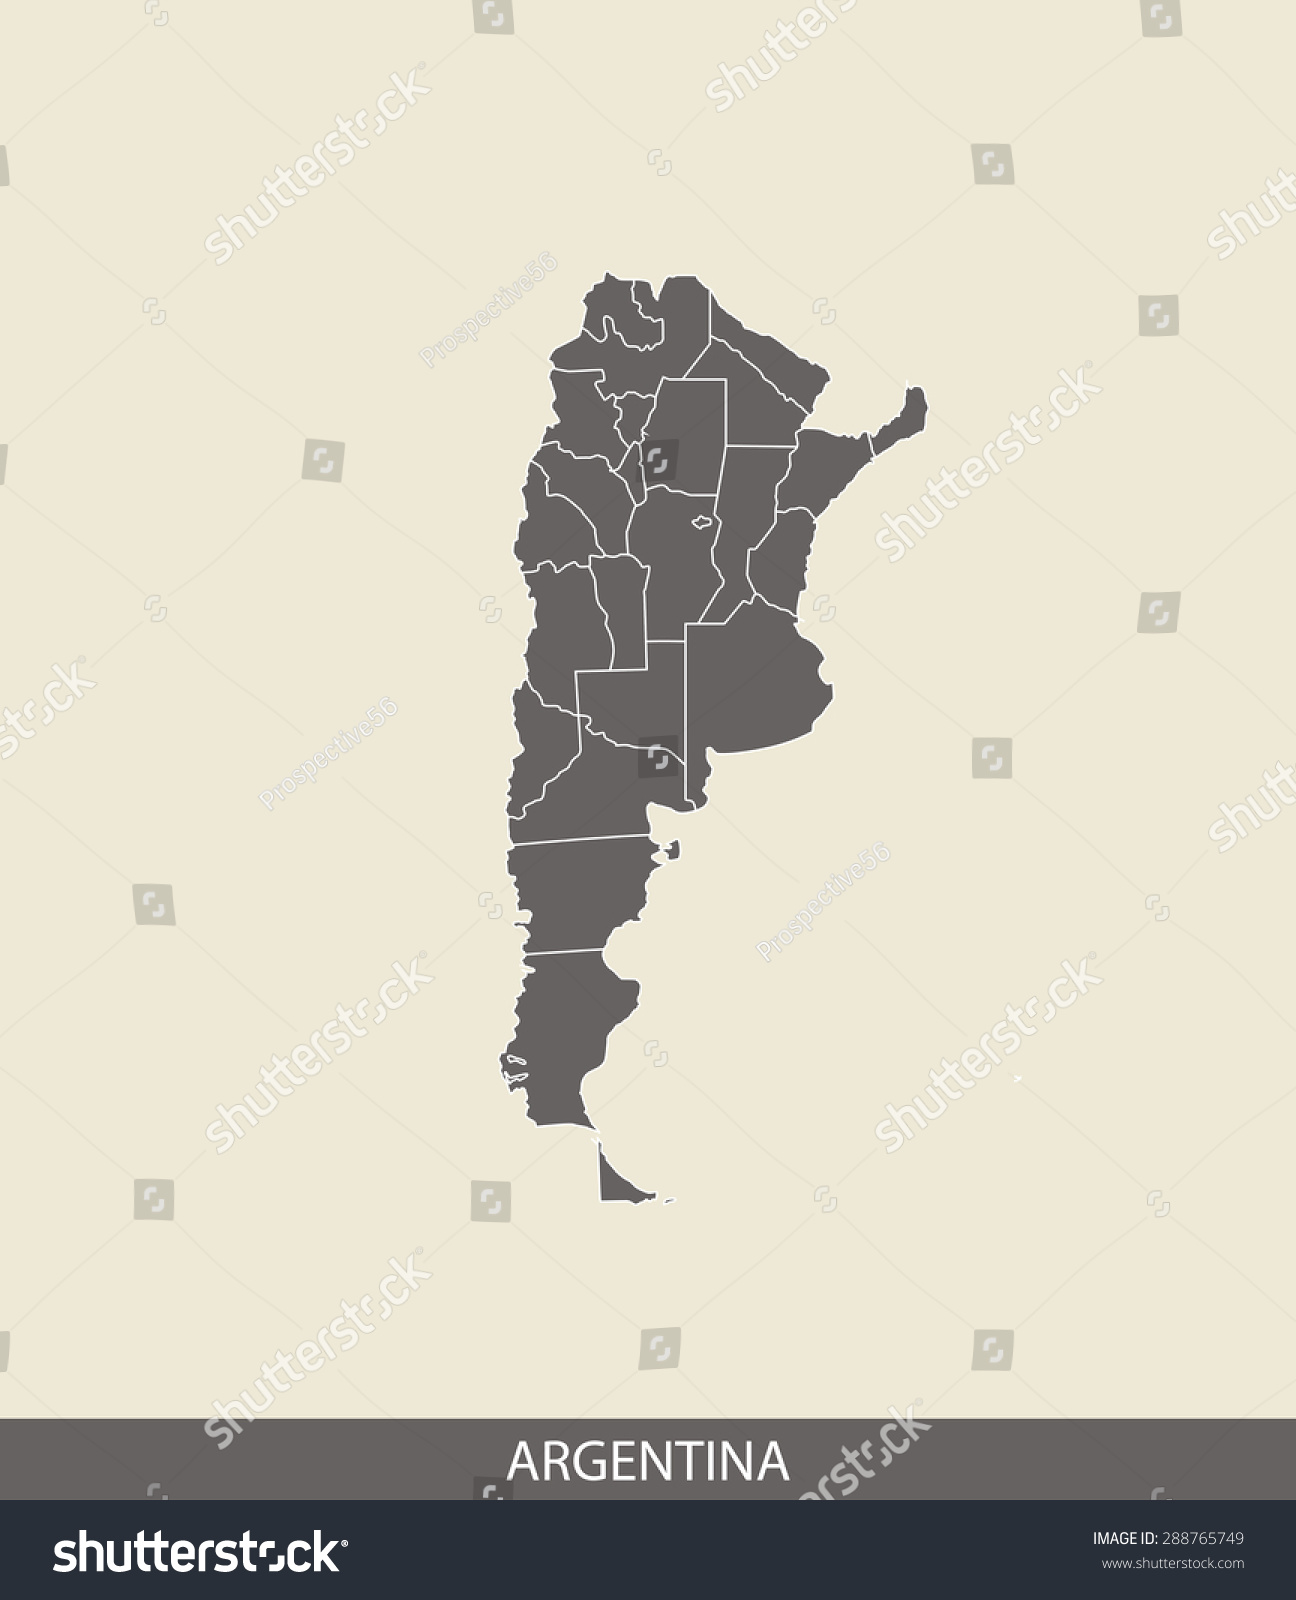 阿根廷阿根廷地图矢量地图轮廓对比灰色背景的